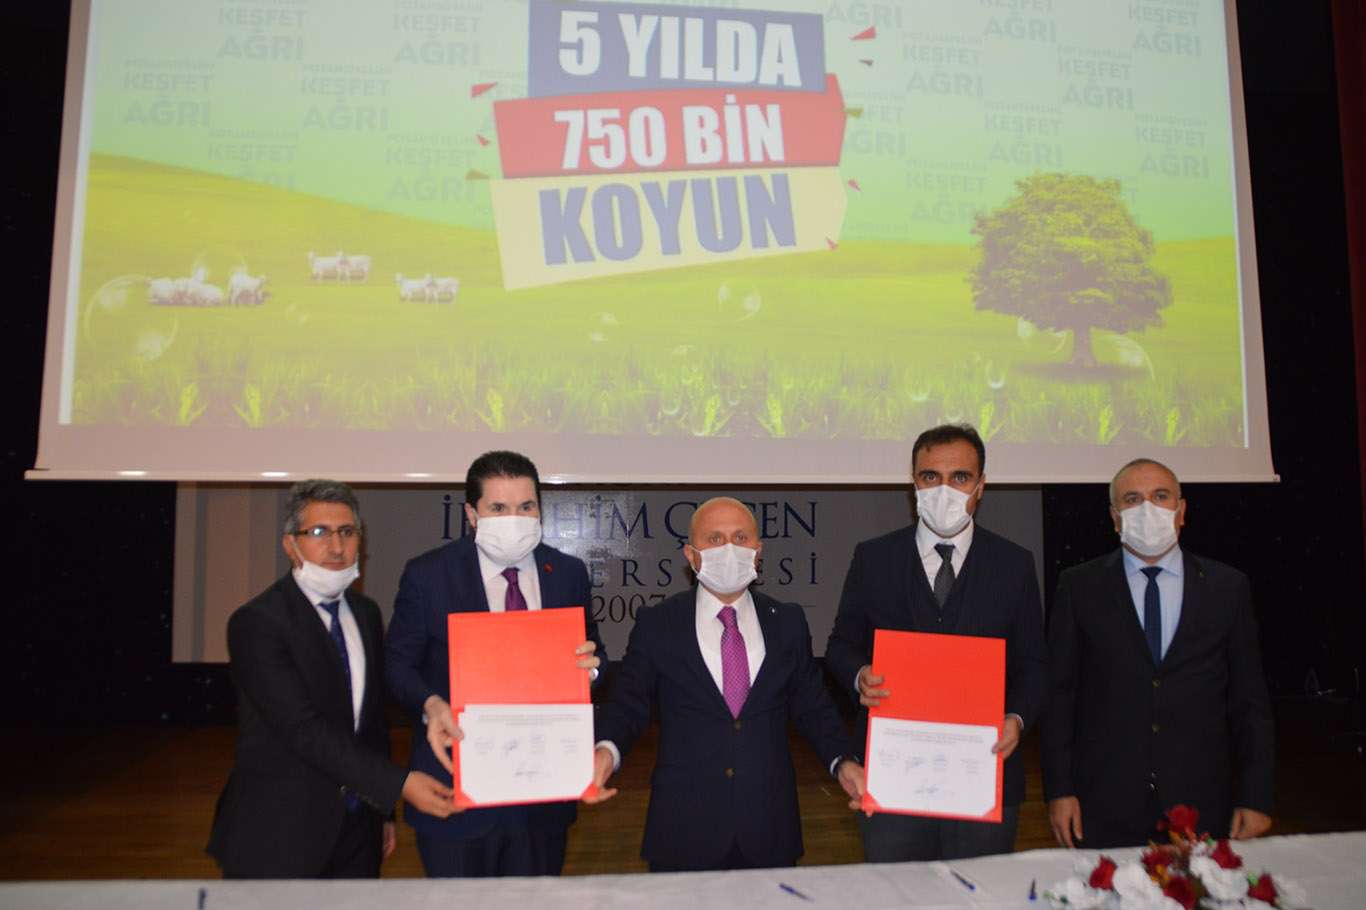 Ağrı'da "5 yılda 750 bin koyun" projesinin protokolü imzalandı